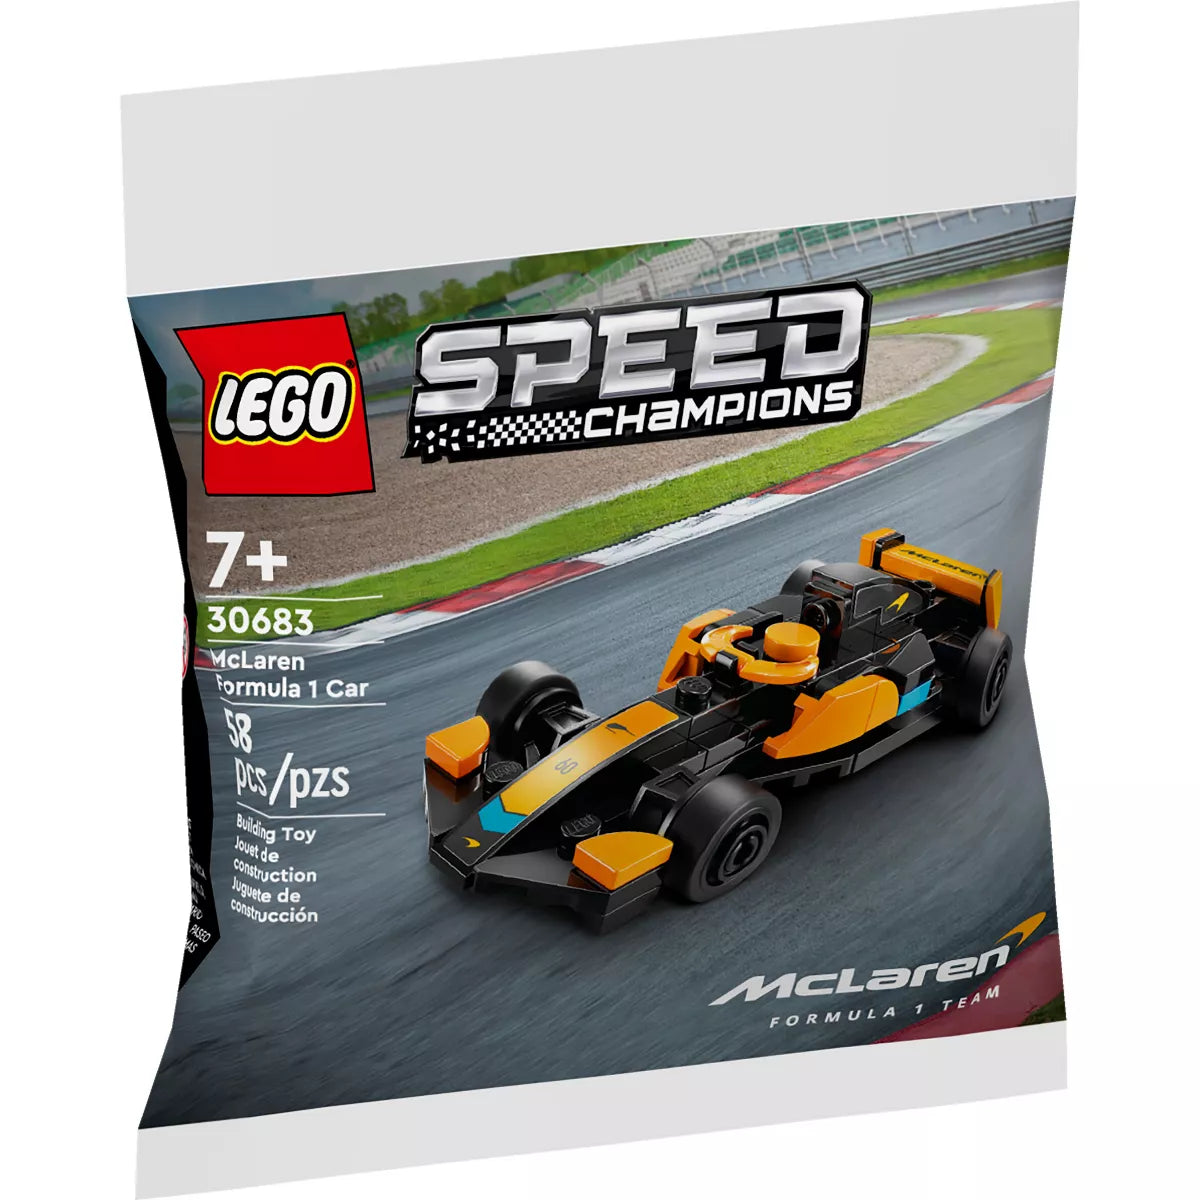 LEGO 30683 McLaren Formula 1 Car